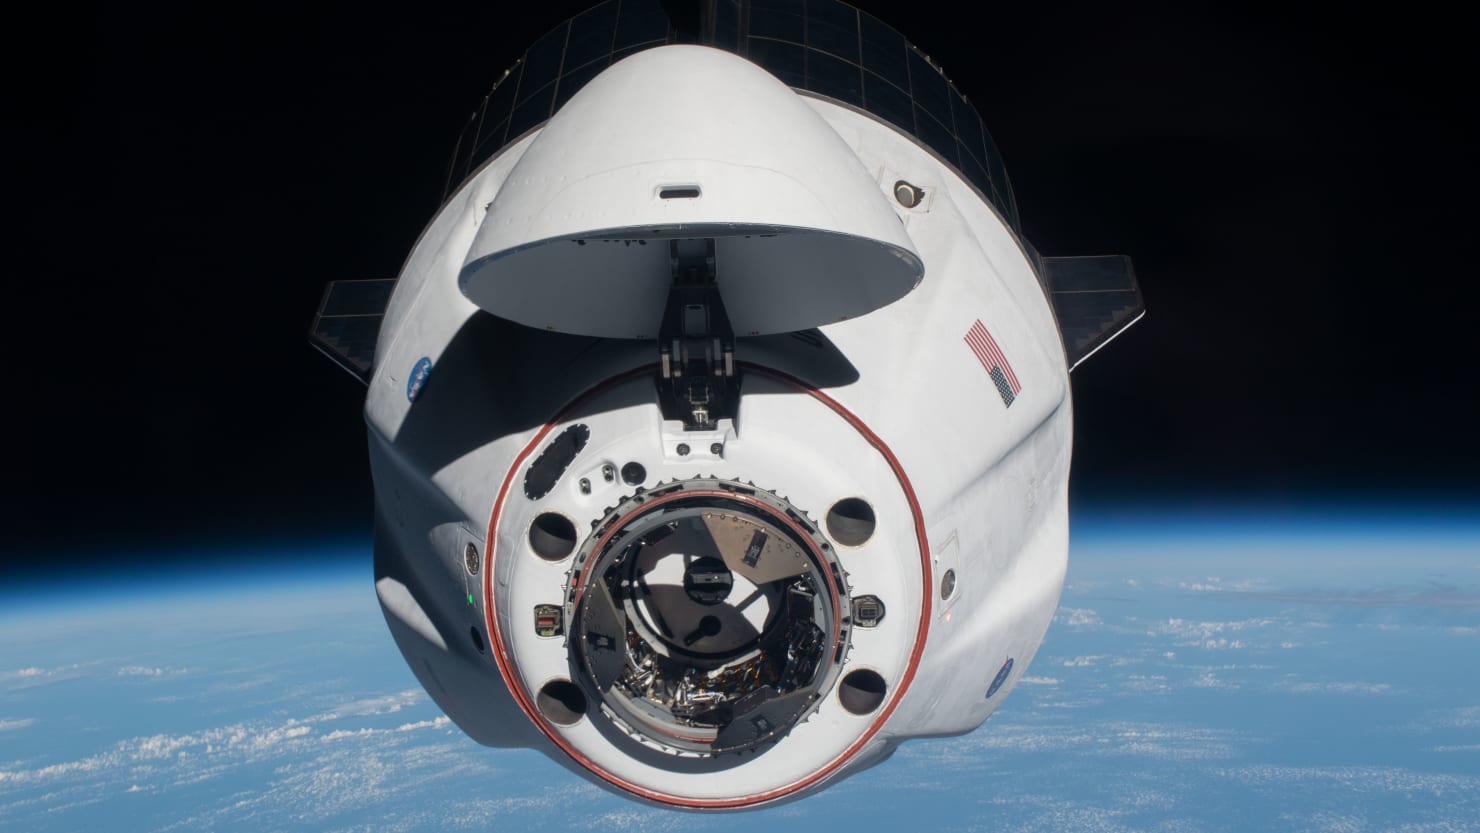 La NASA está considerando usar SpaceX para rescatar astronautas después de la fuga de la estación espacial rusa